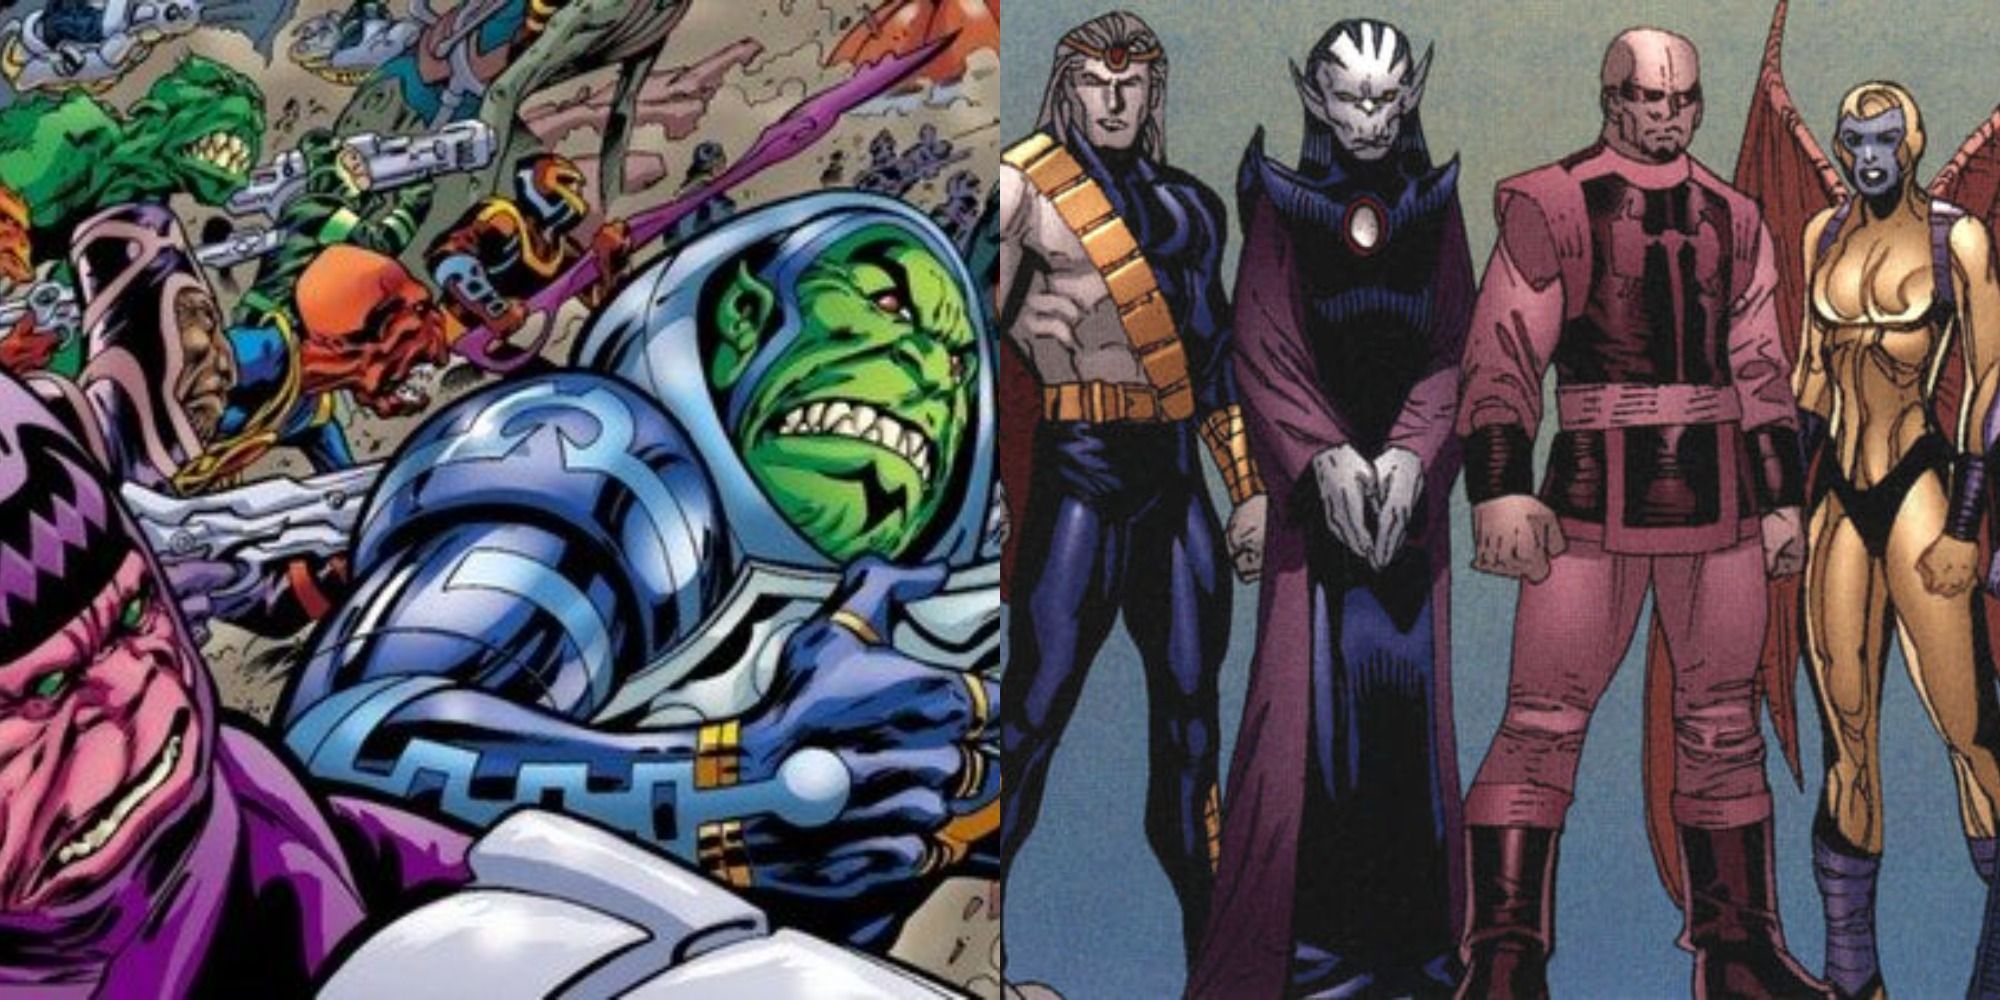 Split image: Marvel Comics' Deviants do battle, the Deviants stand together